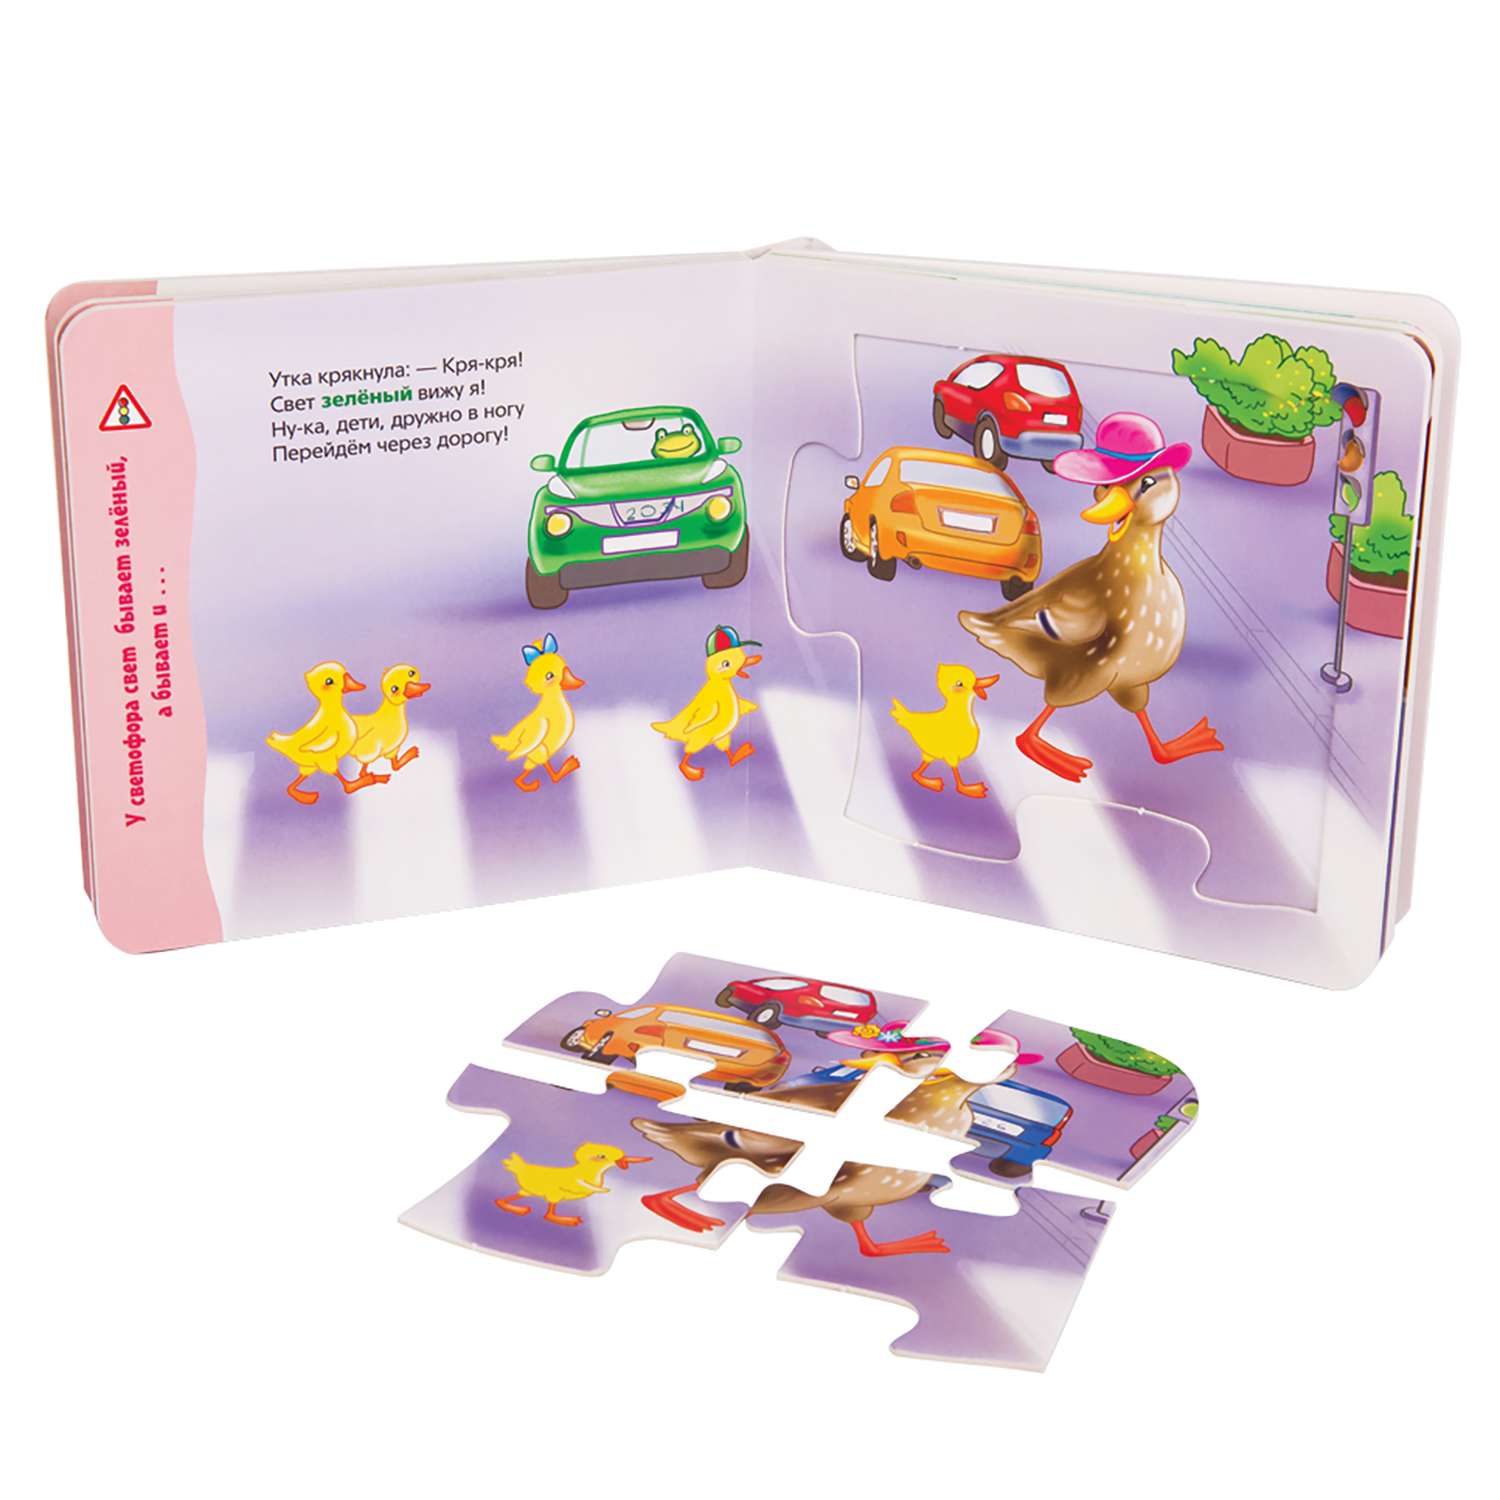 Книжка-игрушка Степ Пазл Правила дорожного движения Мир вокруг нас - фото 2